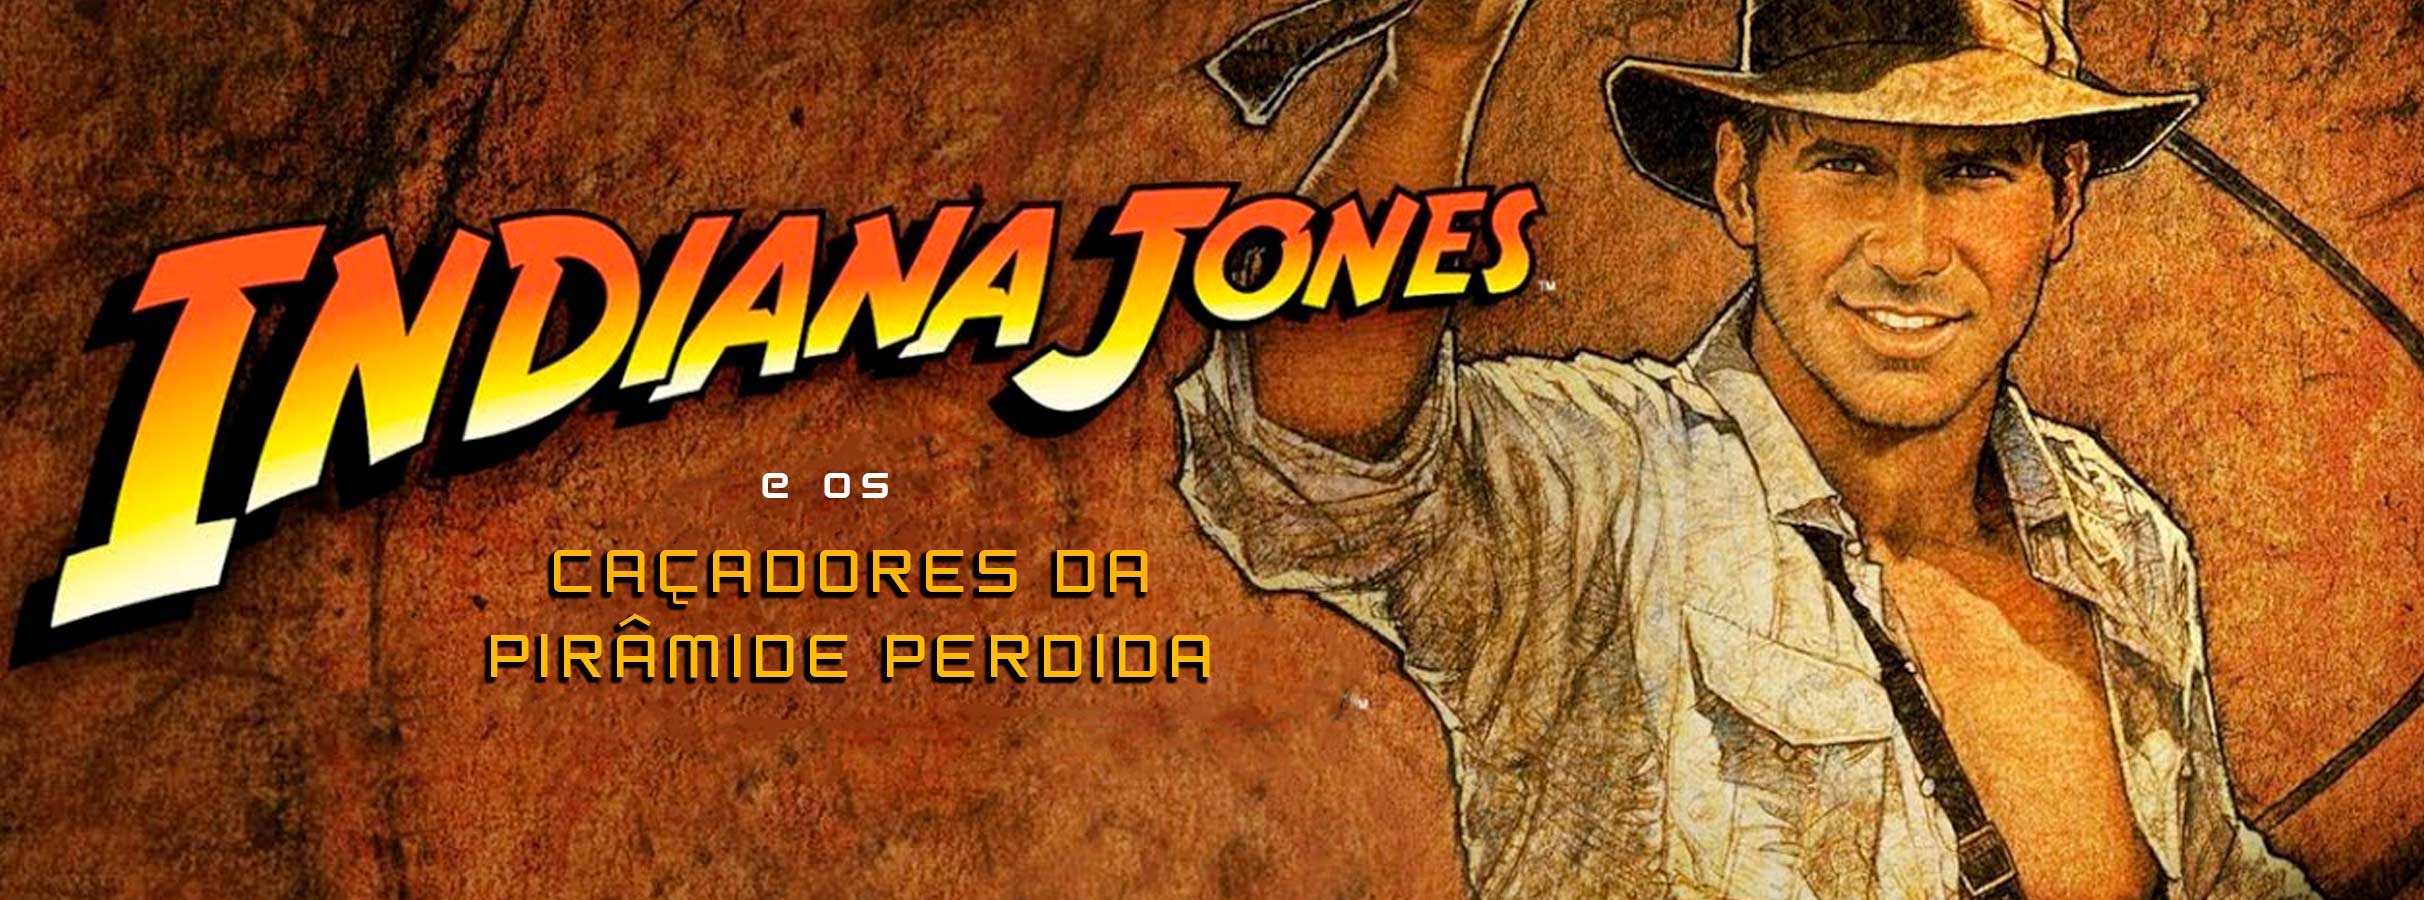 Conexão Satoshi #04 – Indiana Jones: Os Caçadores da Pirâmide Financeira